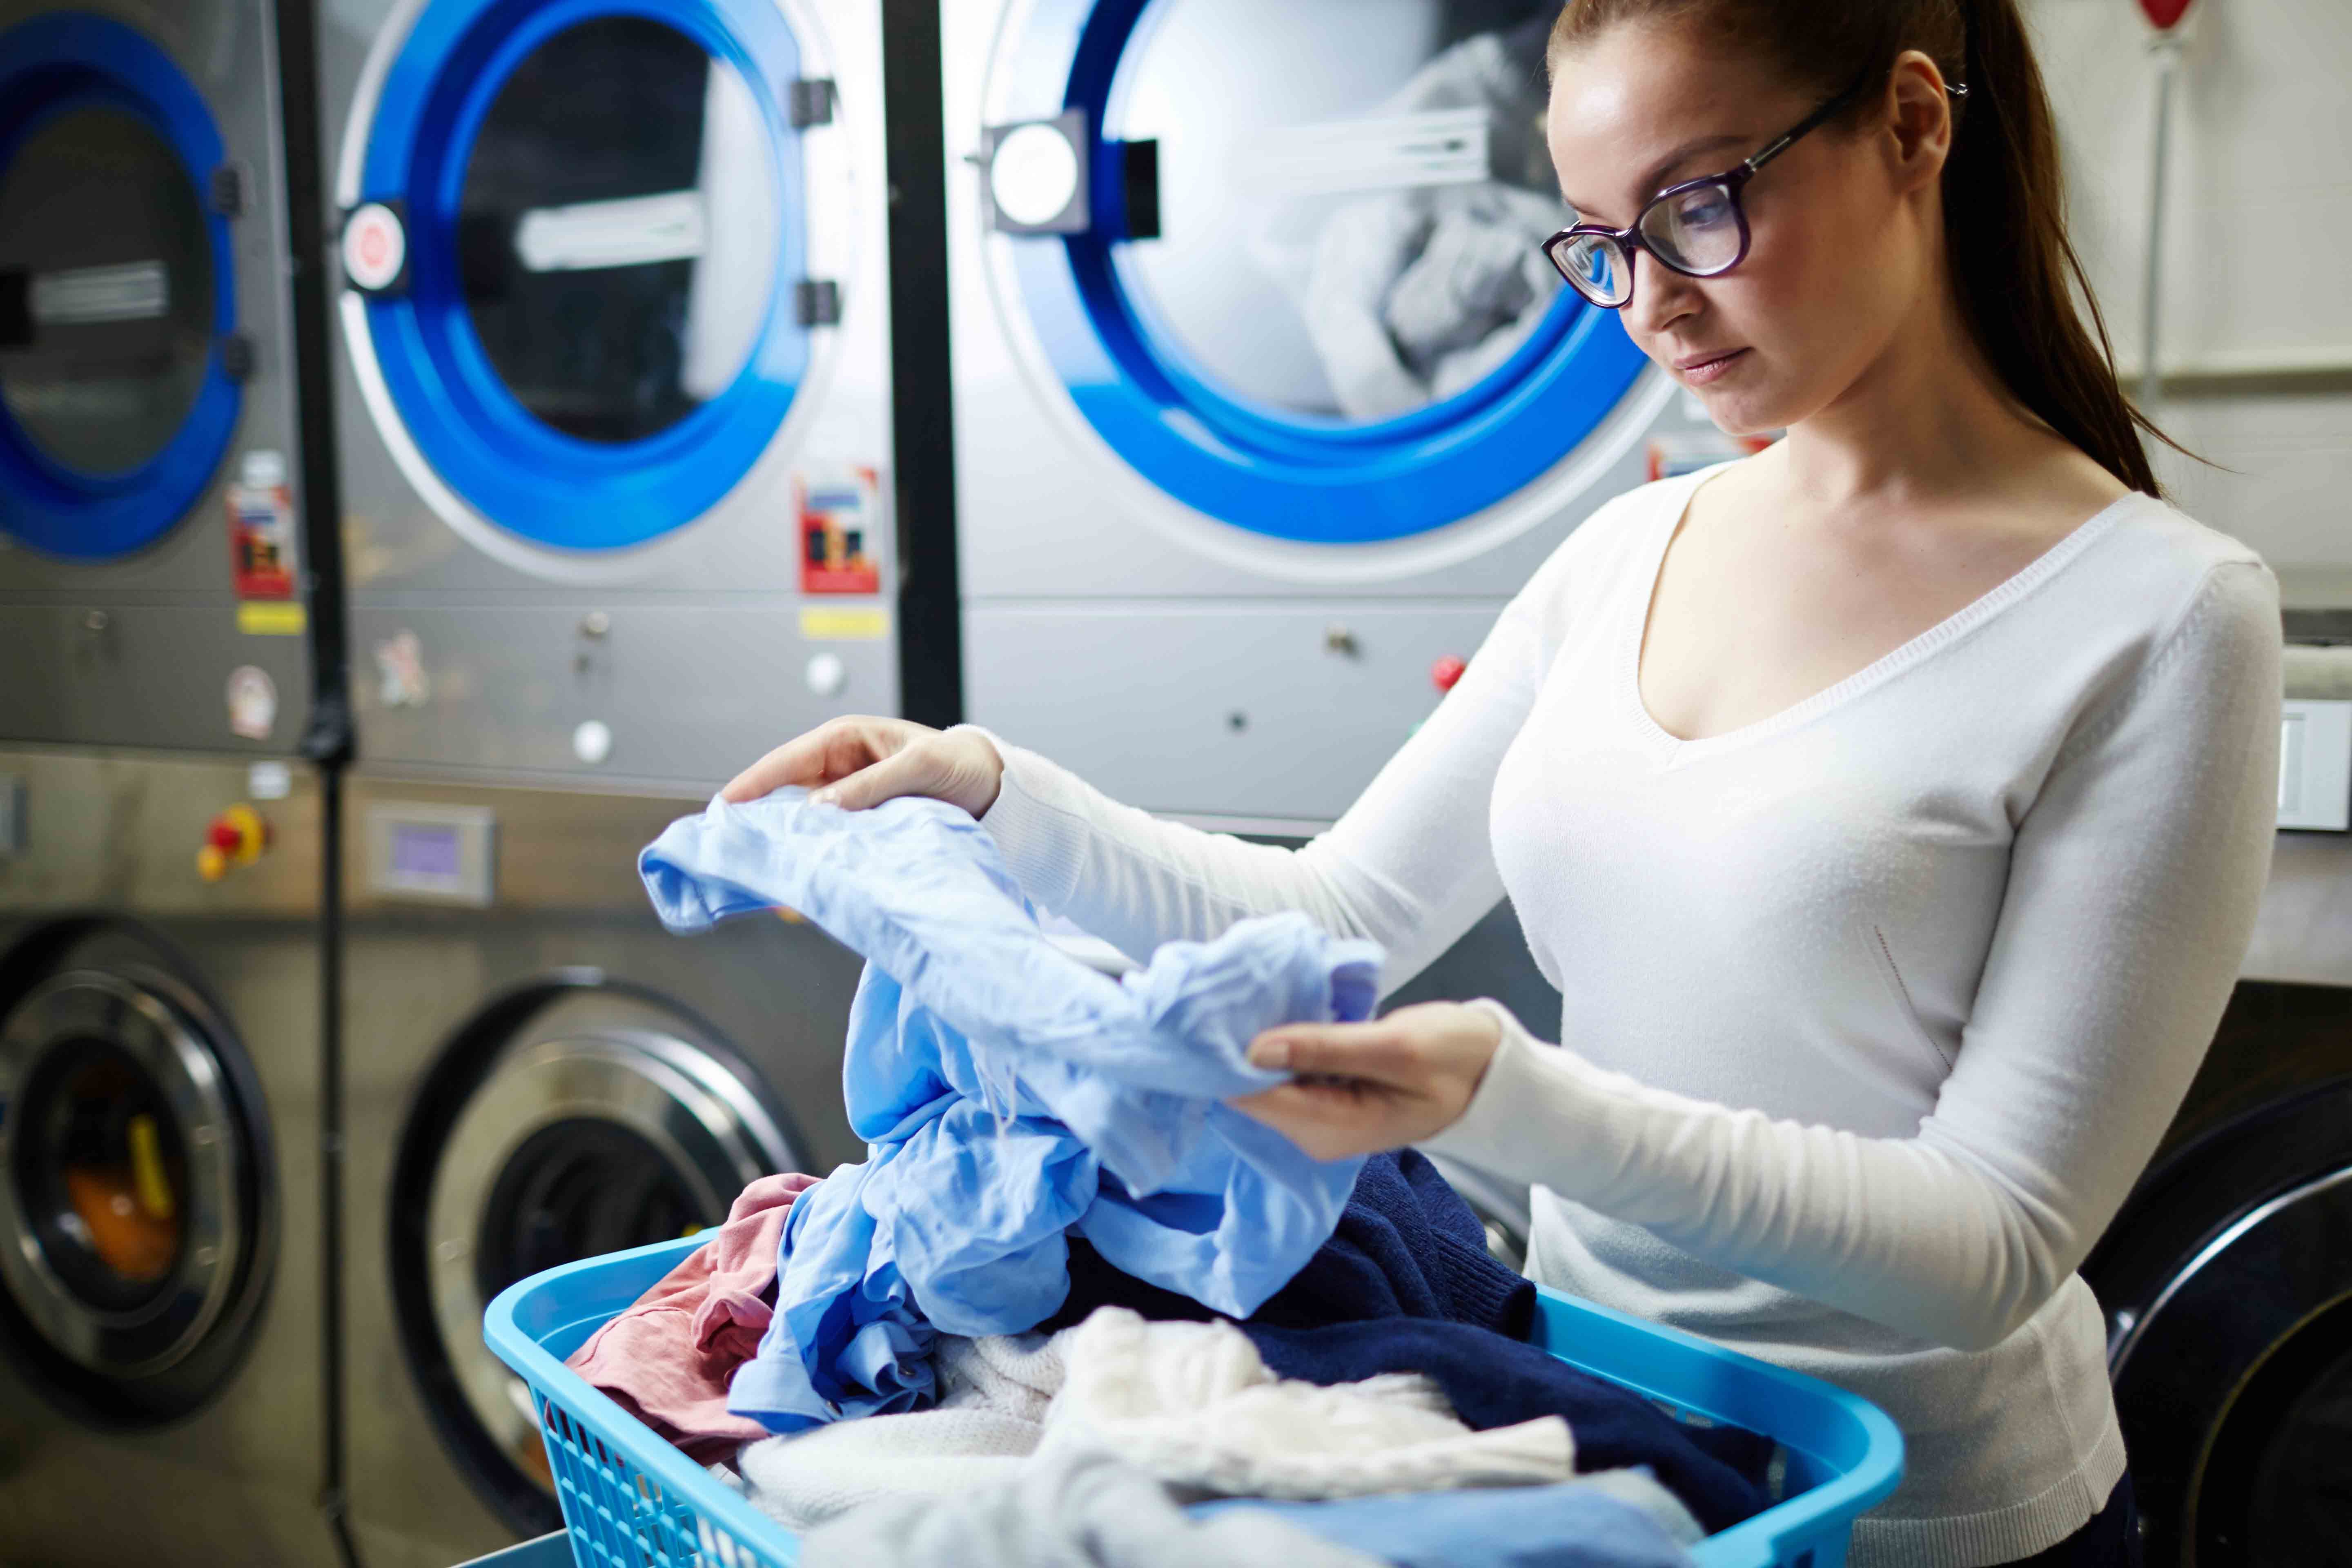 Franquicias de lavanderías, uno de los modelos de negocio más rentable del mercado según Franquicias Hoy